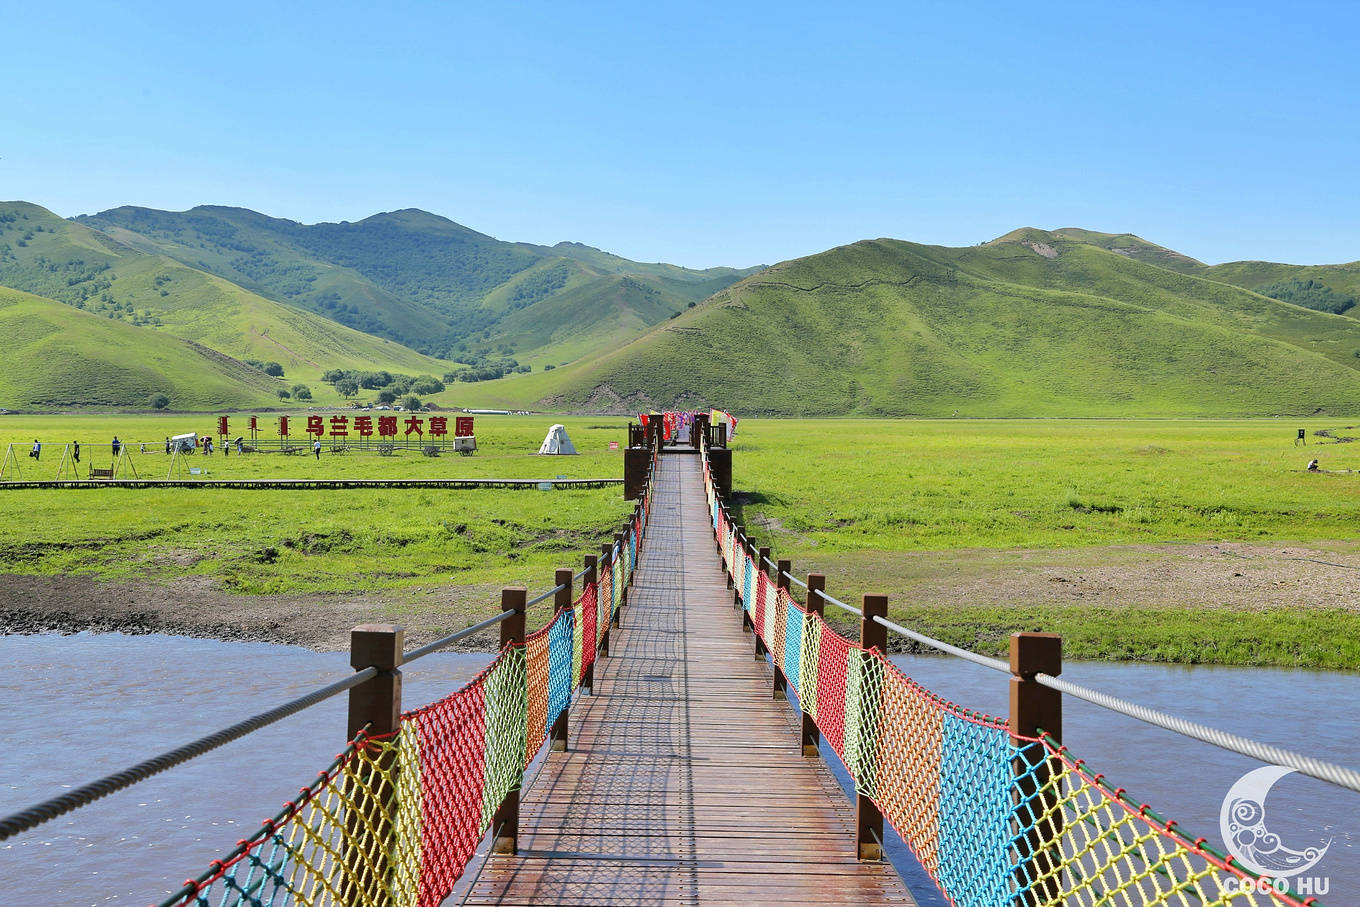 依托风景优美的乌兰毛都草原,九曲乌兰河建设而成,是兴安盟唯一集蒙古